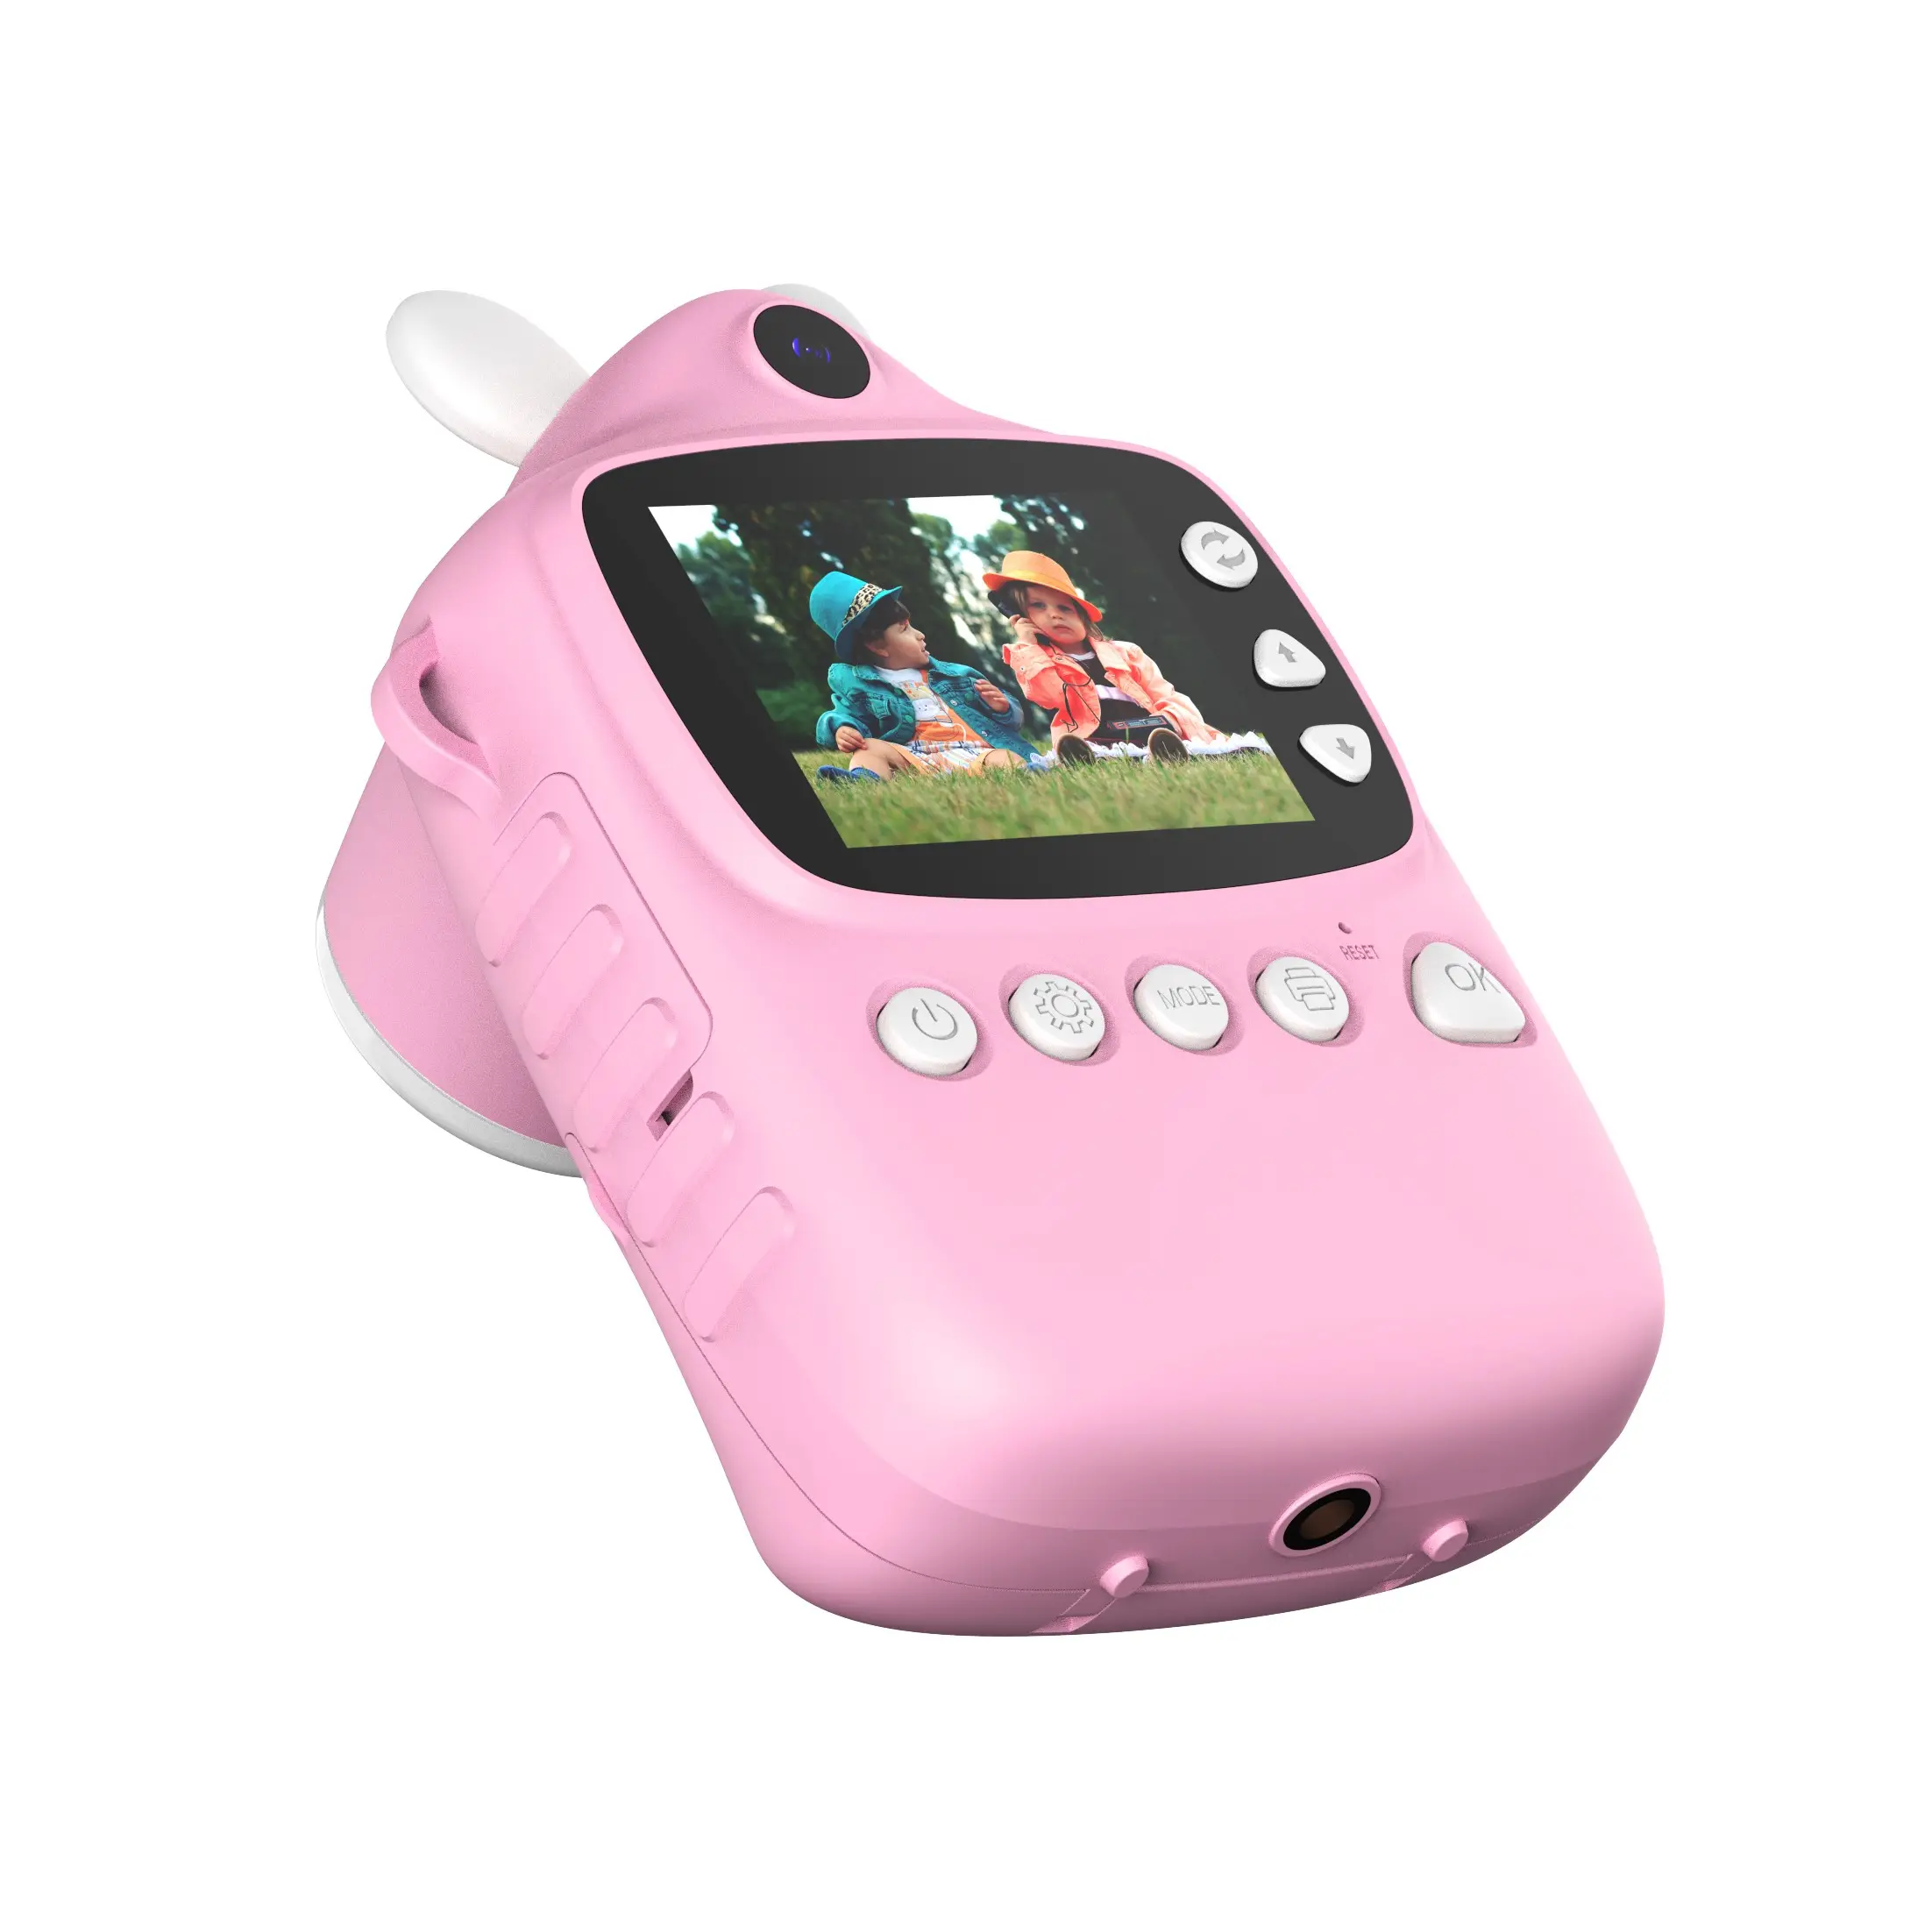 كاميرا تصوير مطبوعة للأطفال 1080P Hot P1 باللون الوردي كاميرا تصوير مطبوعة سريعة مع طباعة لهدايا أعياد الميلاد